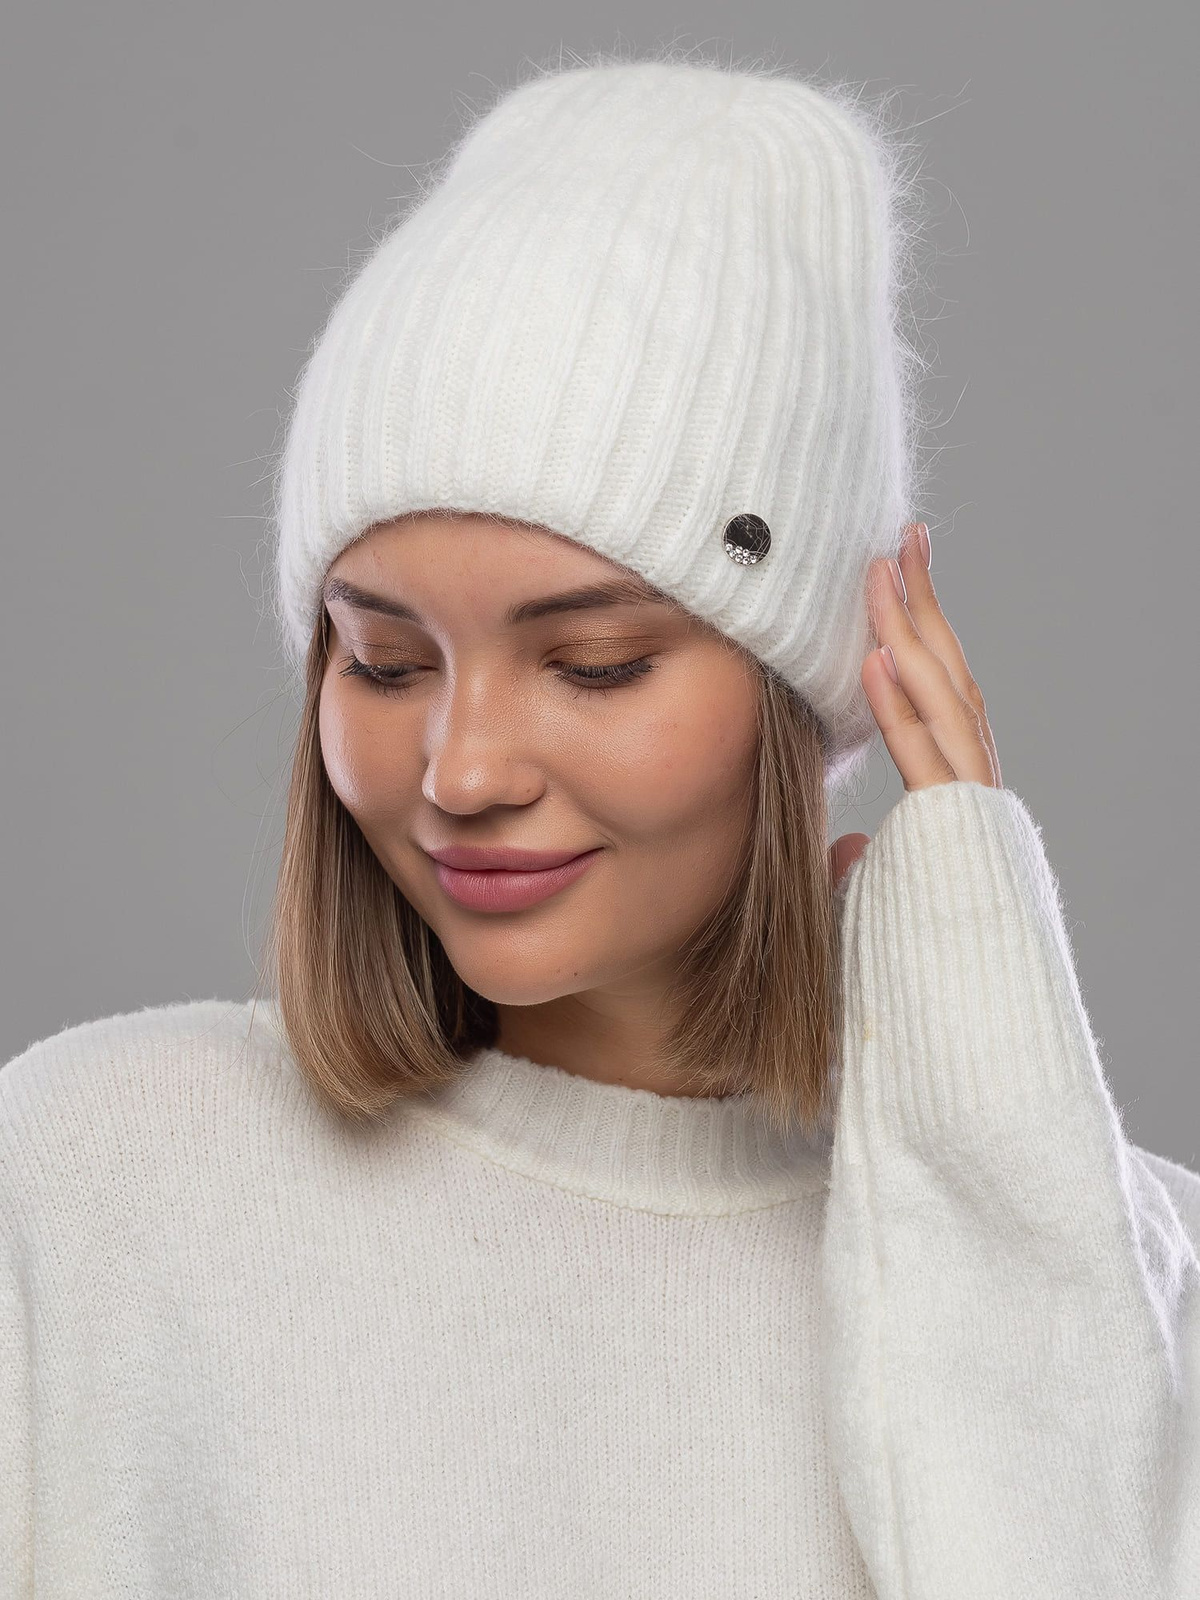 Изготовленная из высококачественных материалов, эта шапка обеспечивает максимальную комфортность и тепло. Нежная ангора приятно прилегает к коже, создавая ощущение погружения в мягкий объятья. Вы будете рады каждый раз надевать эту шапку!